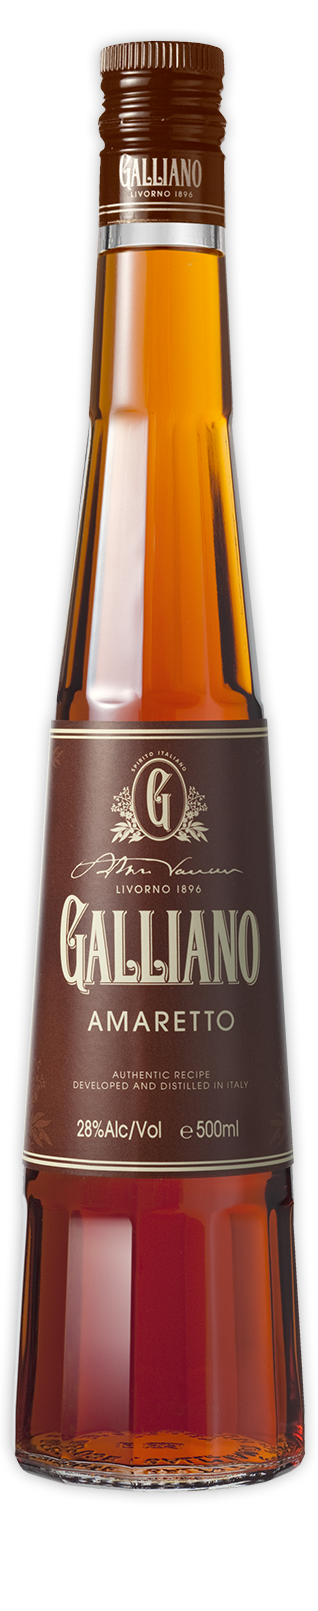 Galliano Amaretto